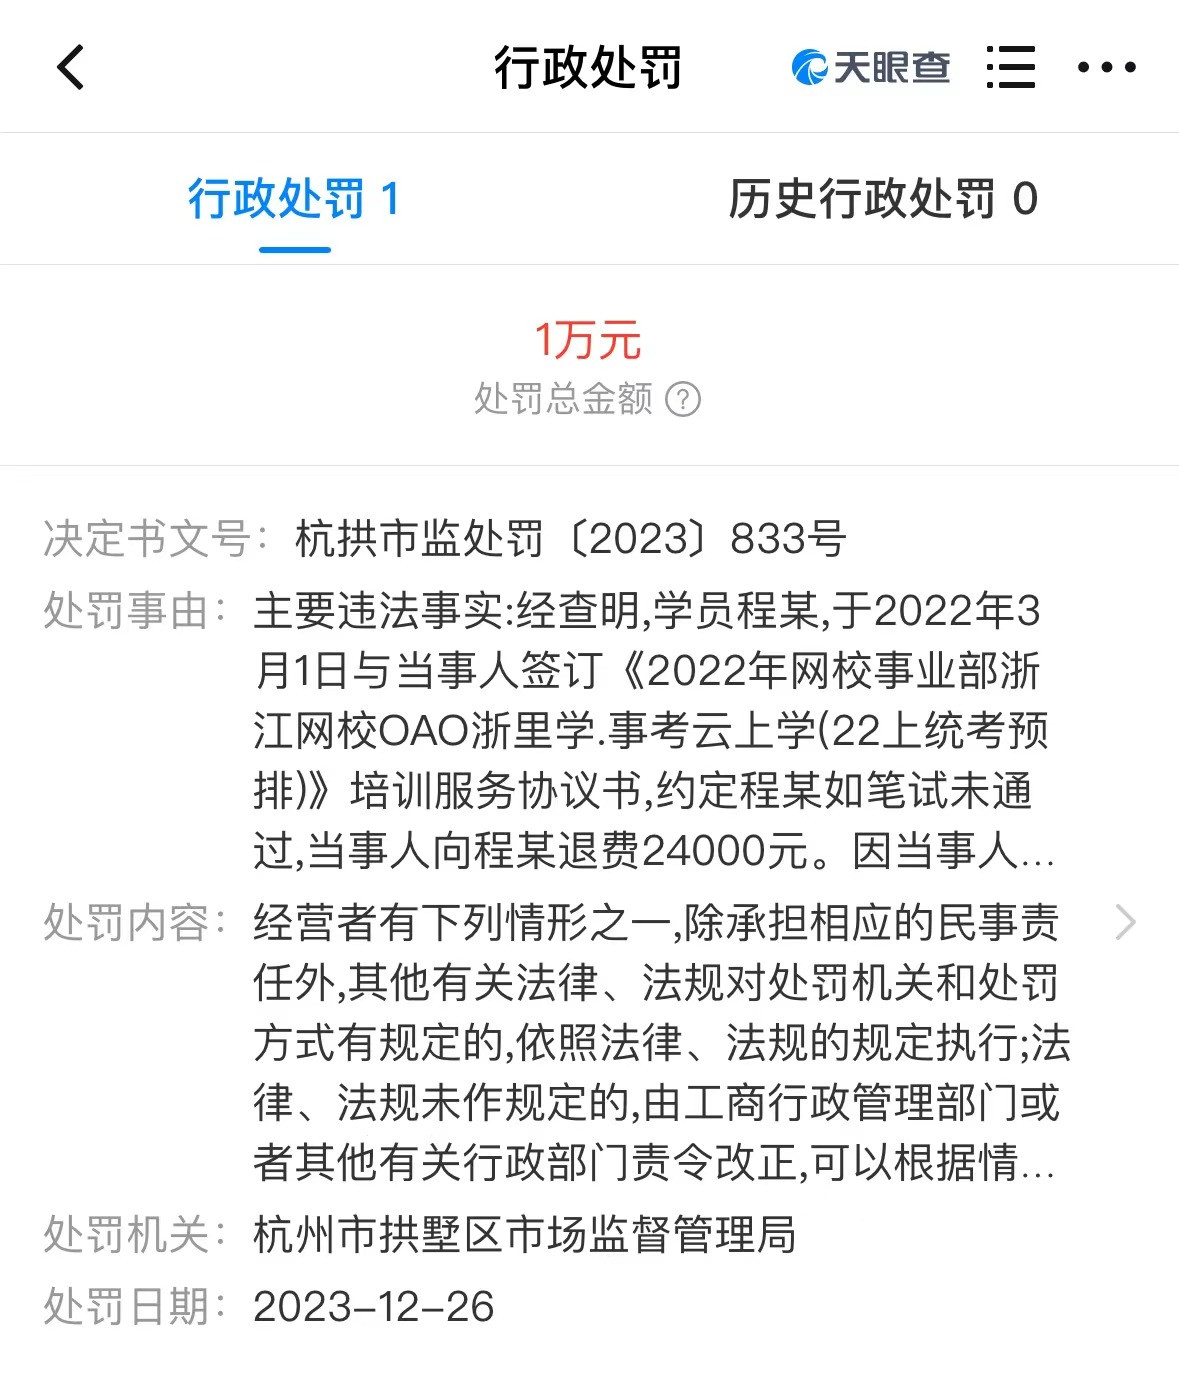 中公教育浙江公司拖延3000元退费被罚款1万